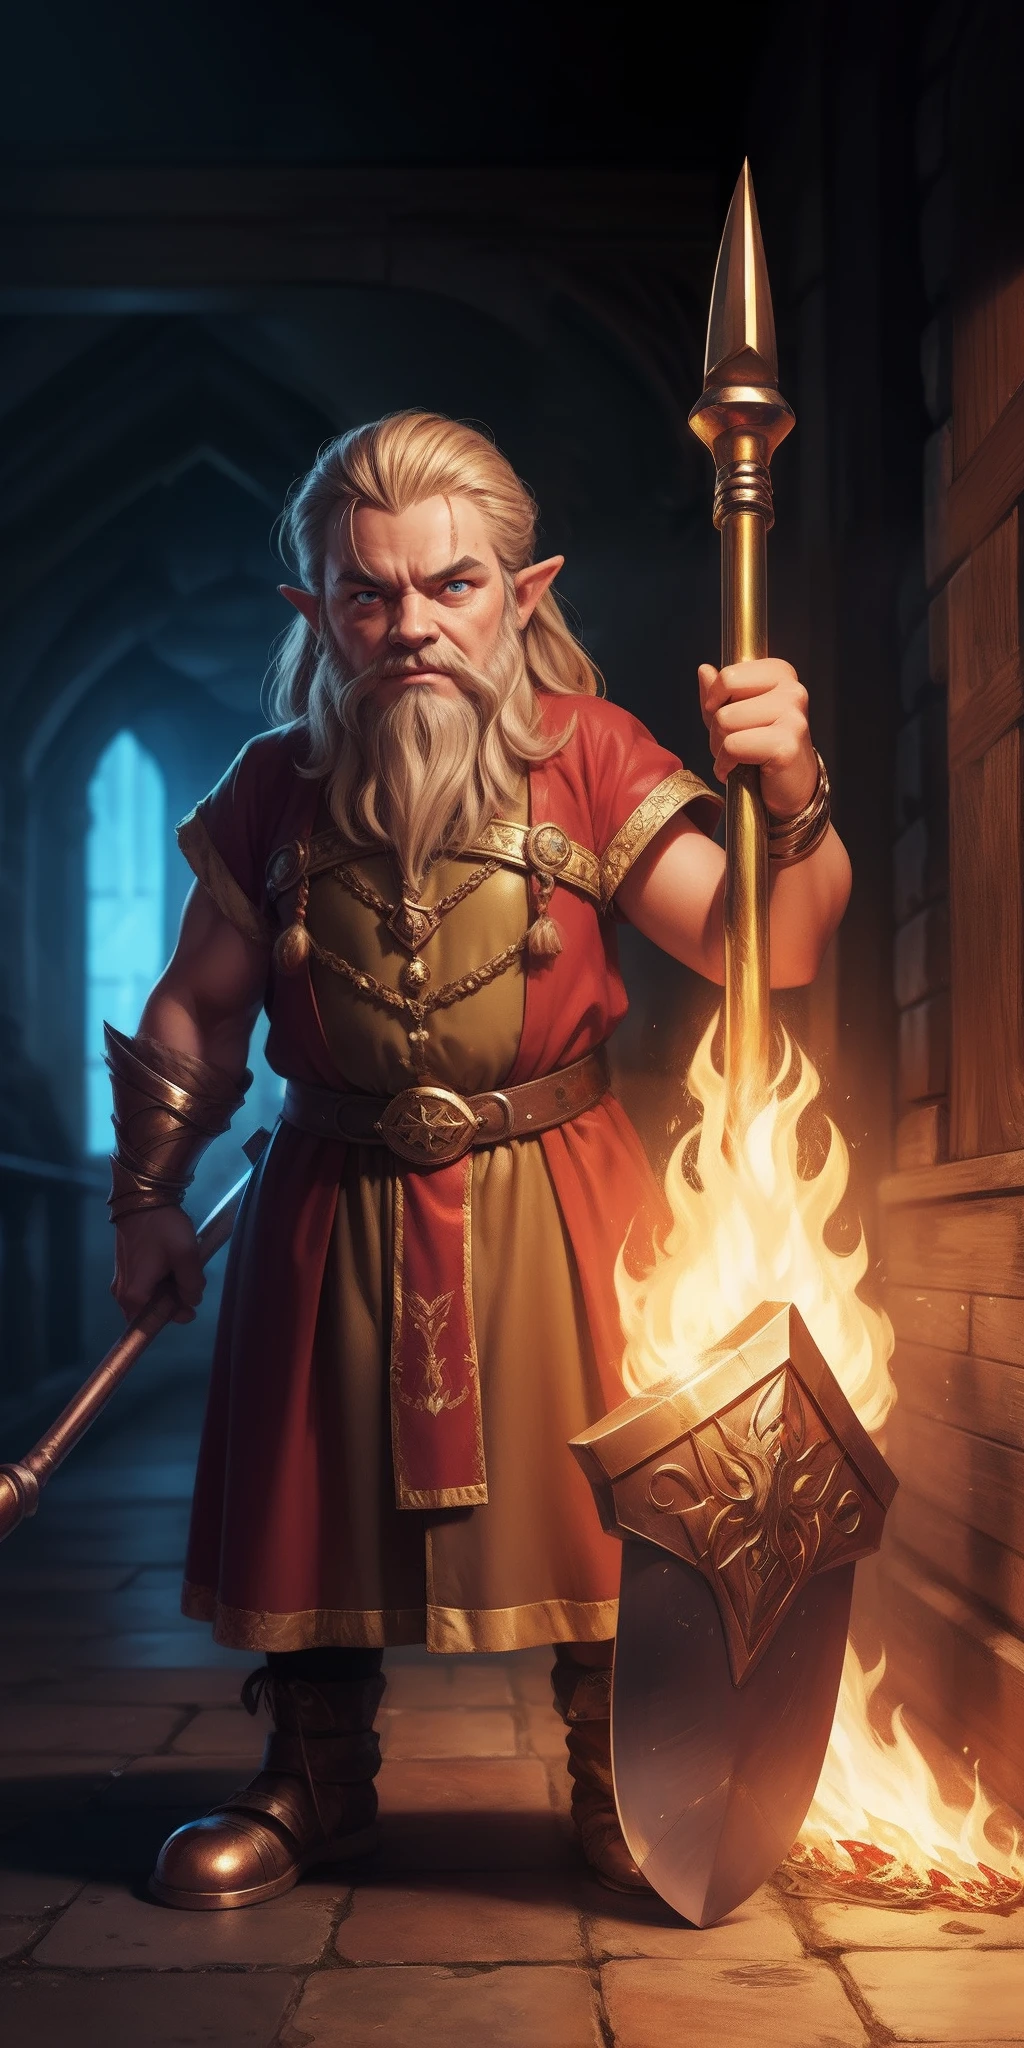 一個有著火熱眼睛的矮人, 帶著巨大的魔法錘, 金屬皮膚